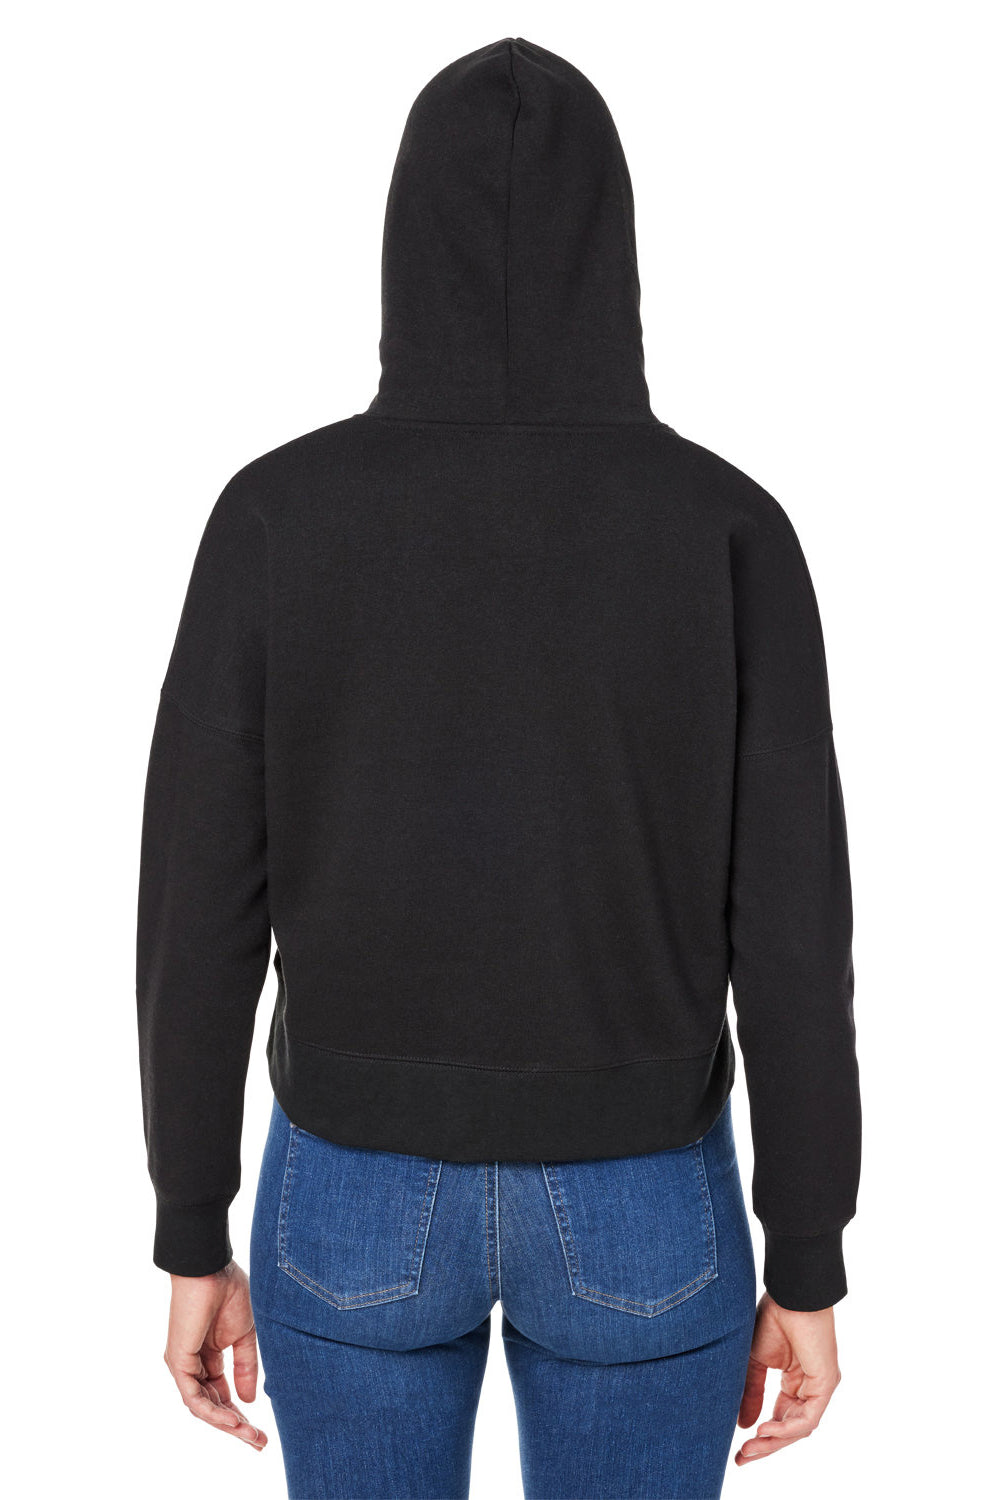 J America 8853JA Womens Cropped Hooded Sweatshirt Hoodie Black Triblend Back